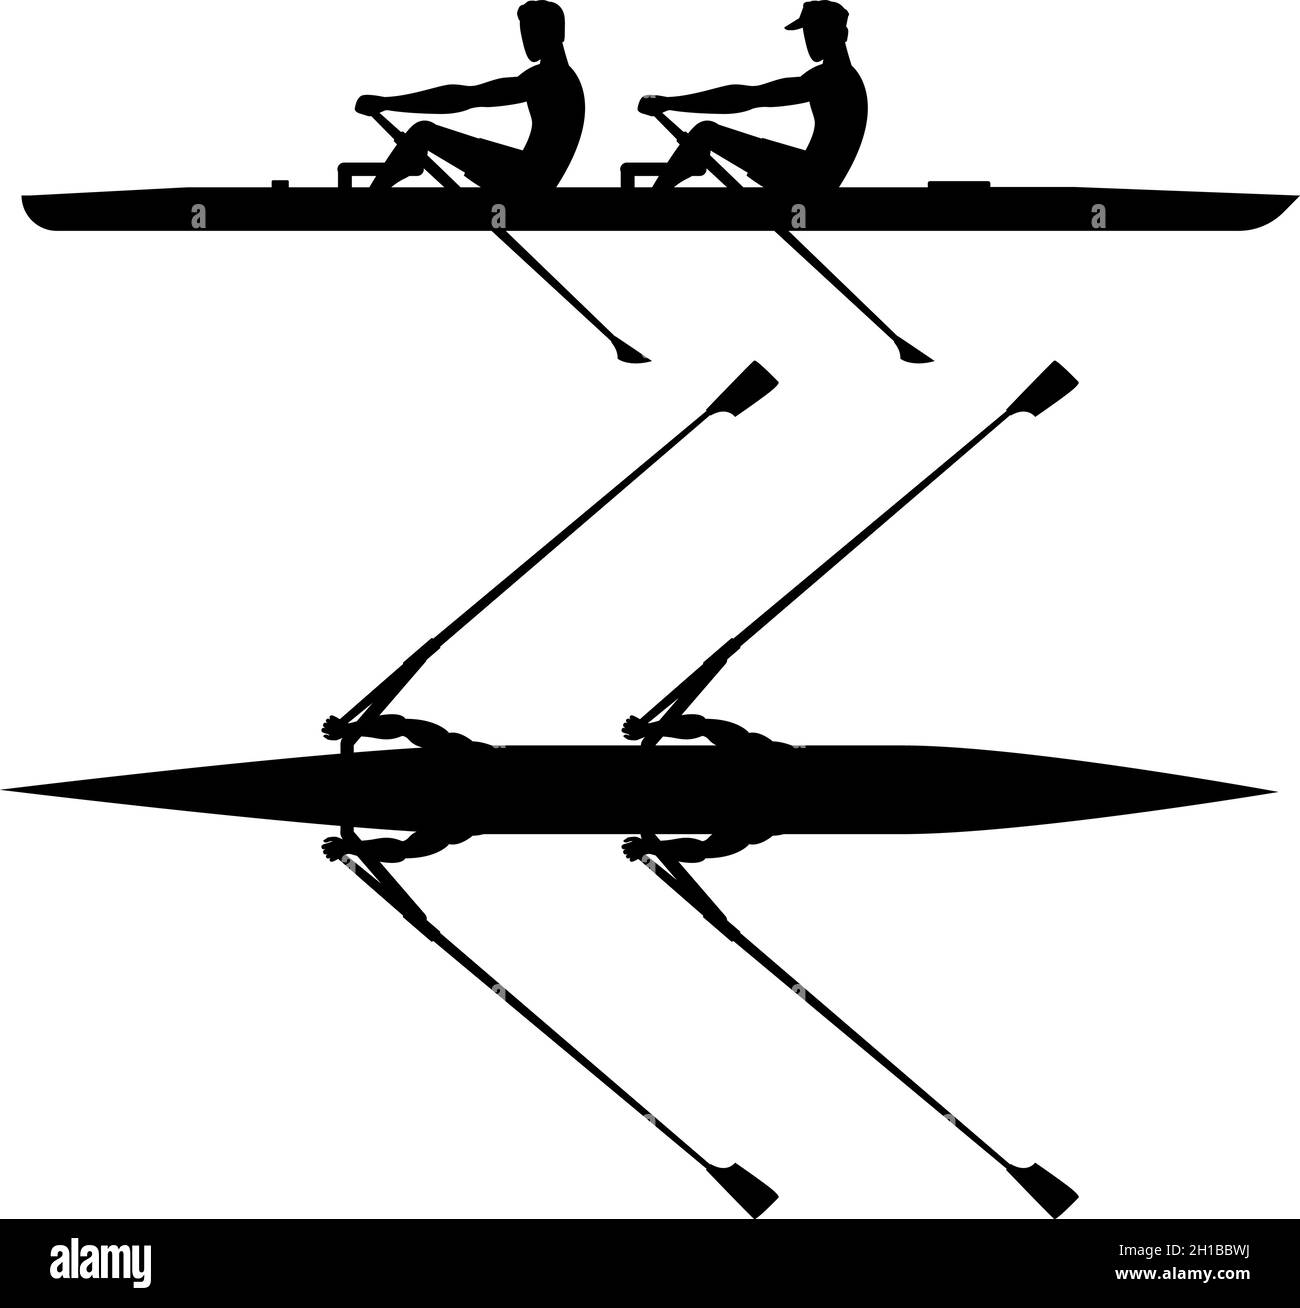 Double entraînement de l'équipe de barque avant la compétition, silhouette noire Illustration de Vecteur